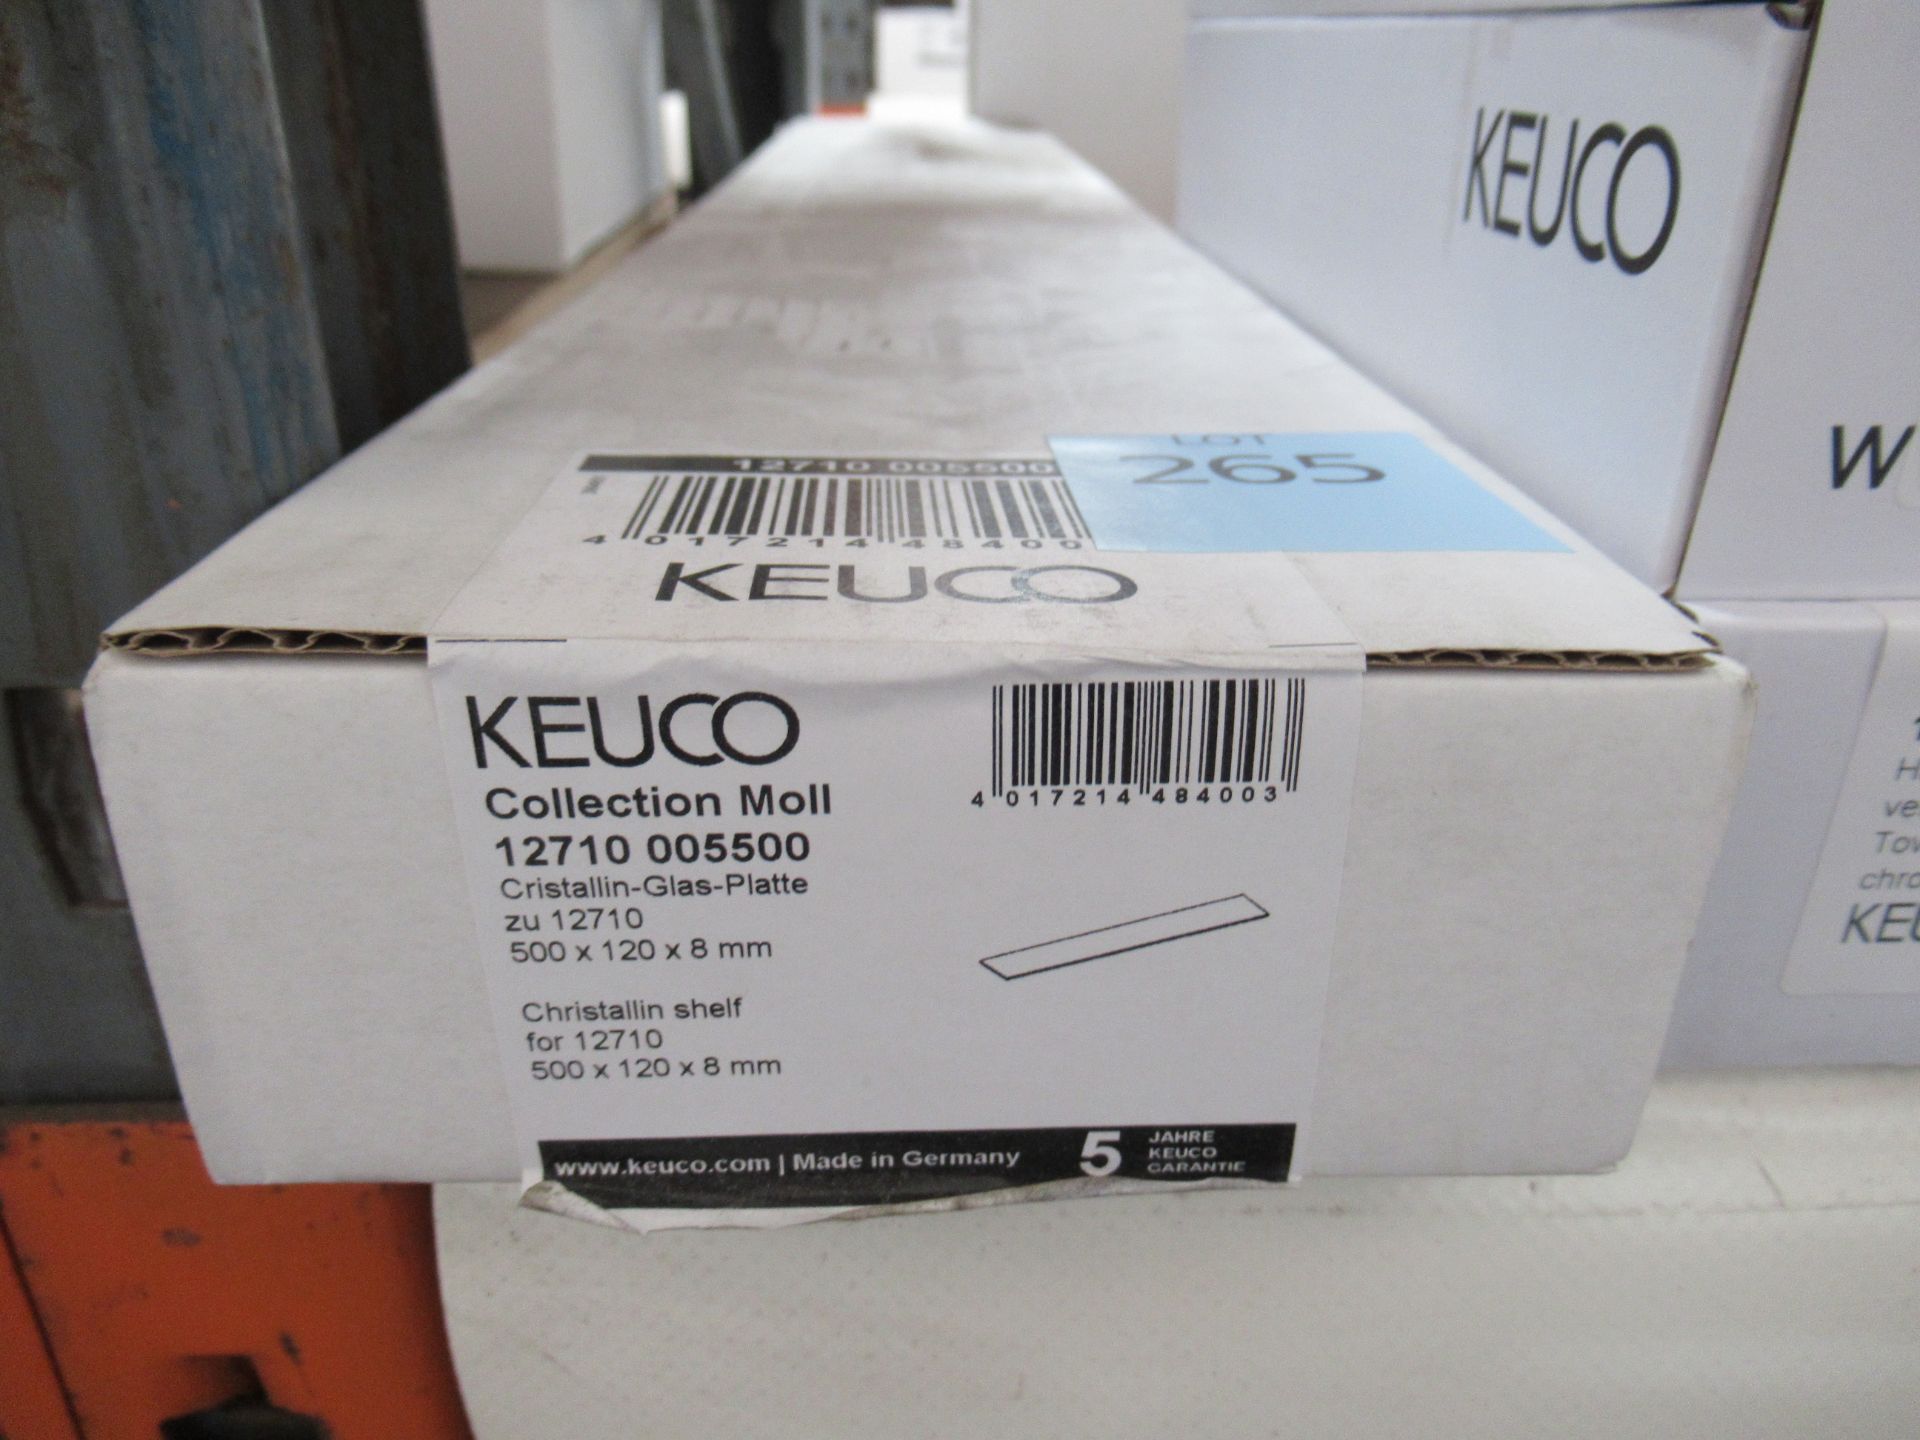 A Keuco Collection Moll Christallin Shelf, P/N 12710-005500